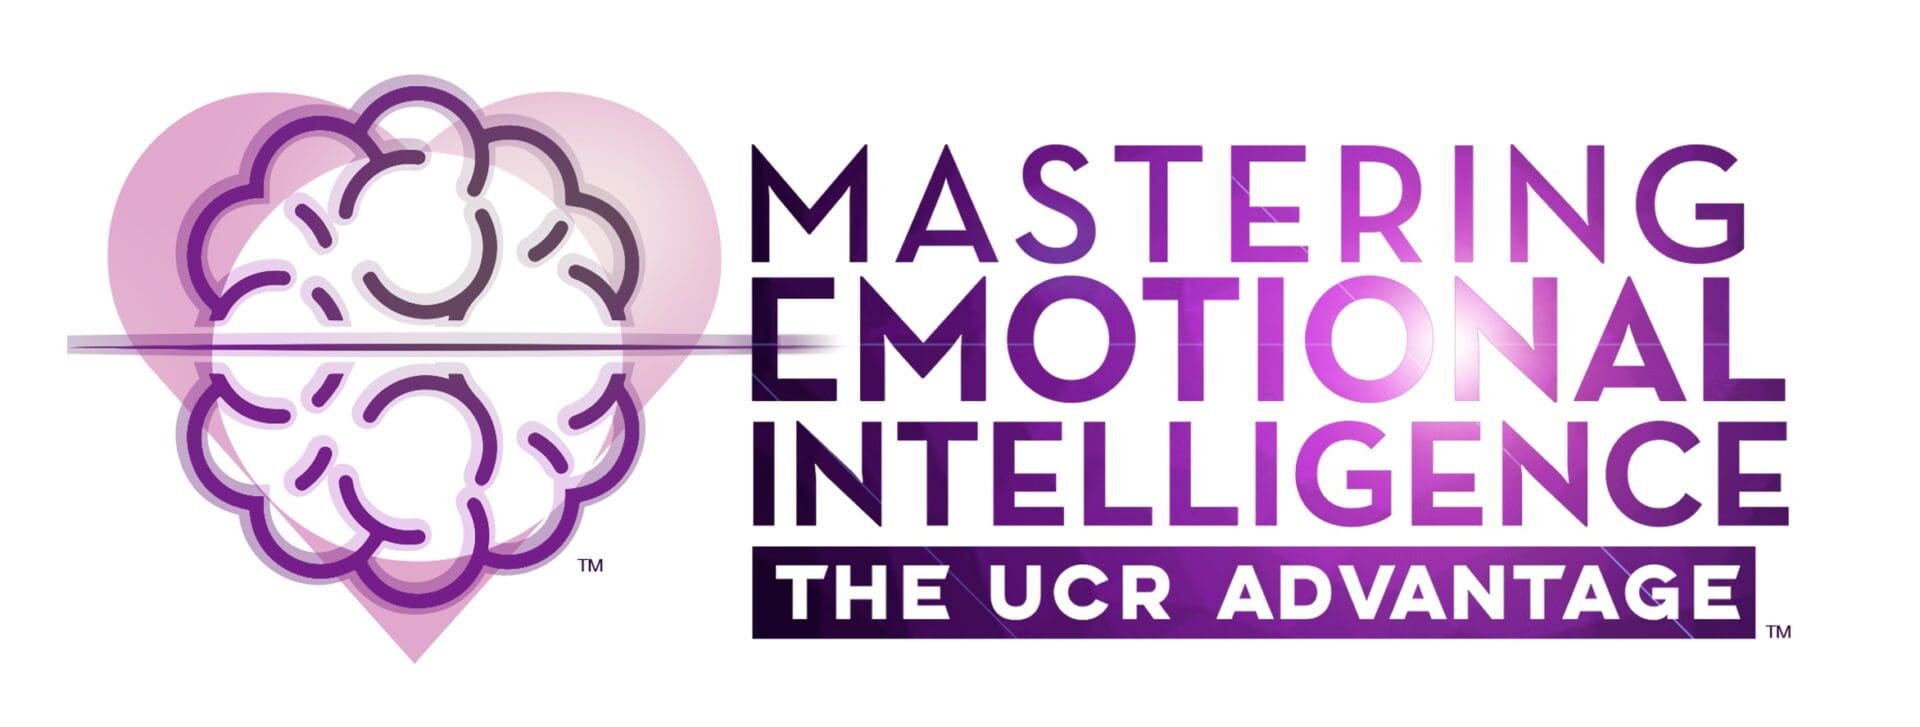 Mastering Emotional Intelligence - The UCR Advantage